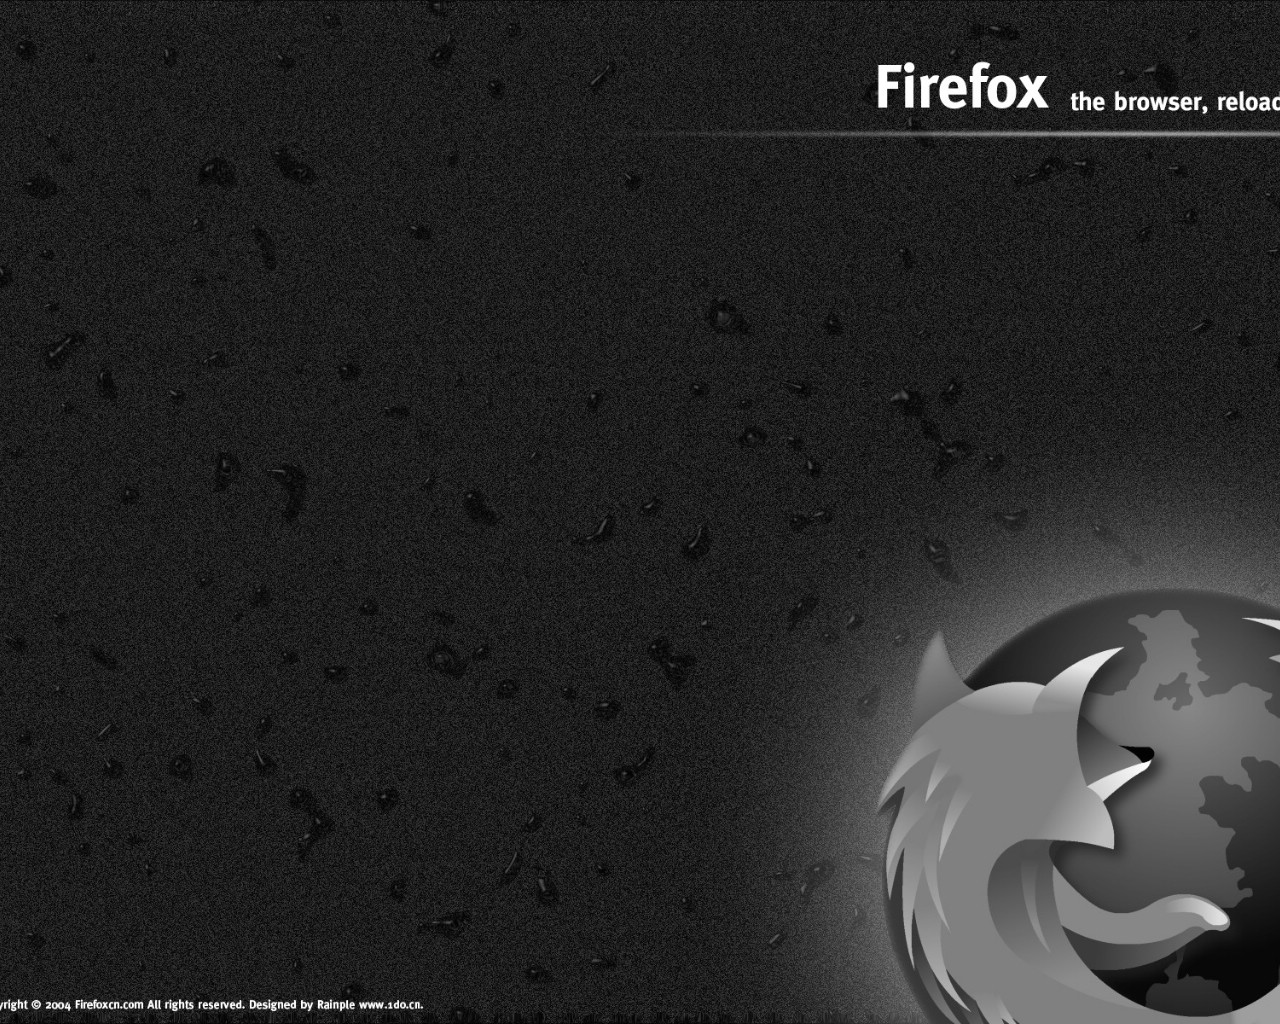 壁纸1280x1024Firefox桌面壁纸 壁纸19壁纸 Firefox桌面壁纸壁纸 Firefox桌面壁纸图片 Firefox桌面壁纸素材 系统壁纸 系统图库 系统图片素材桌面壁纸